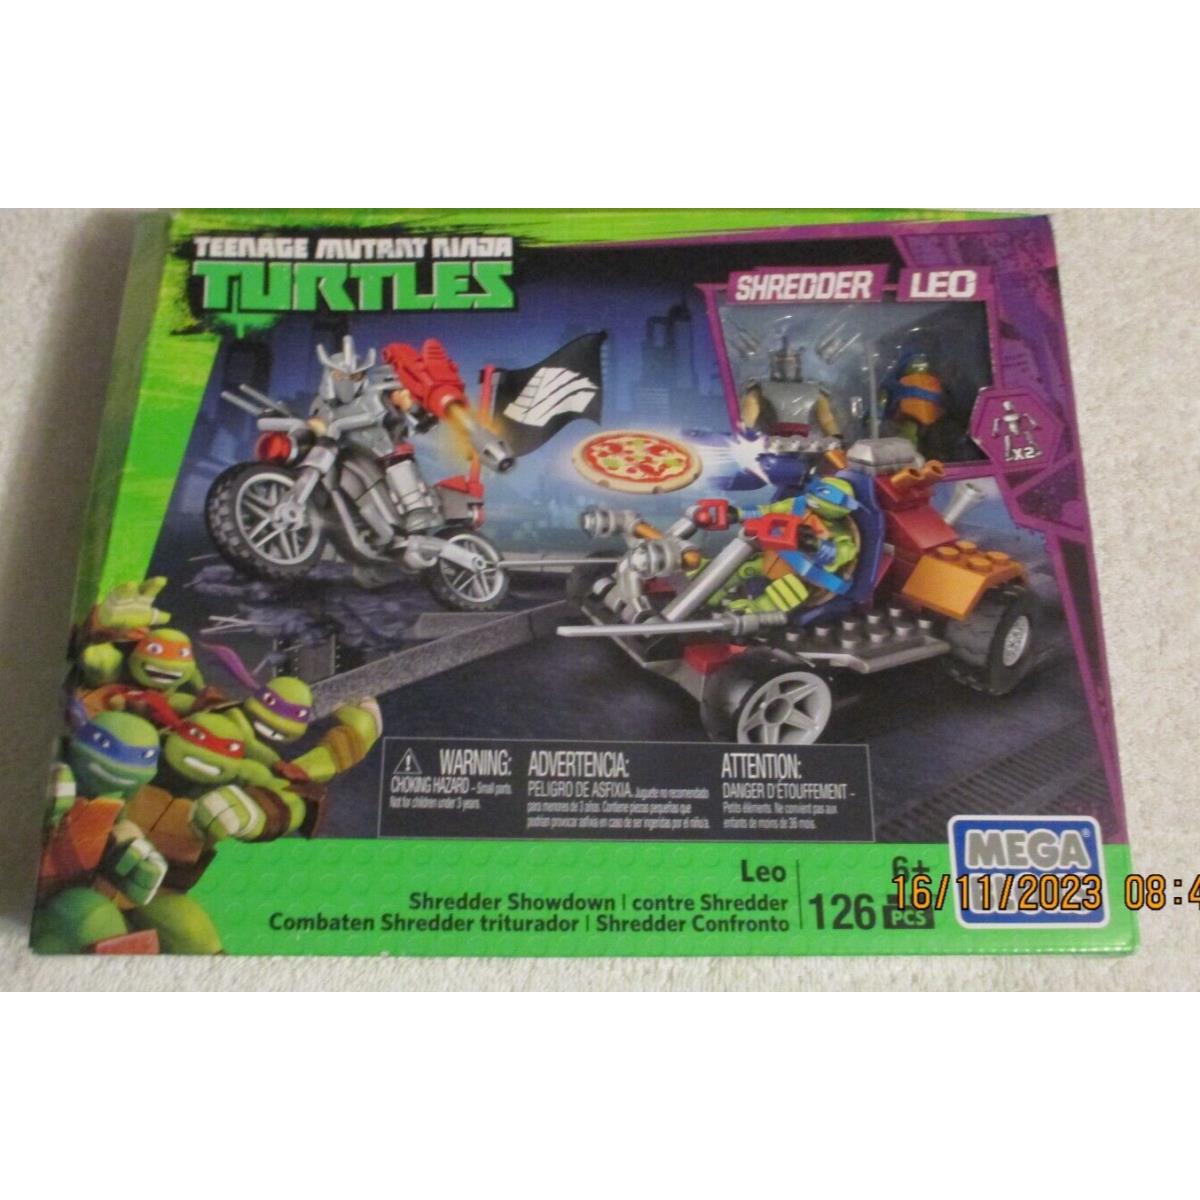 2015 Mega Bloks Teenage Mutant Ninja Turtles Shredder Showdown Set Leo